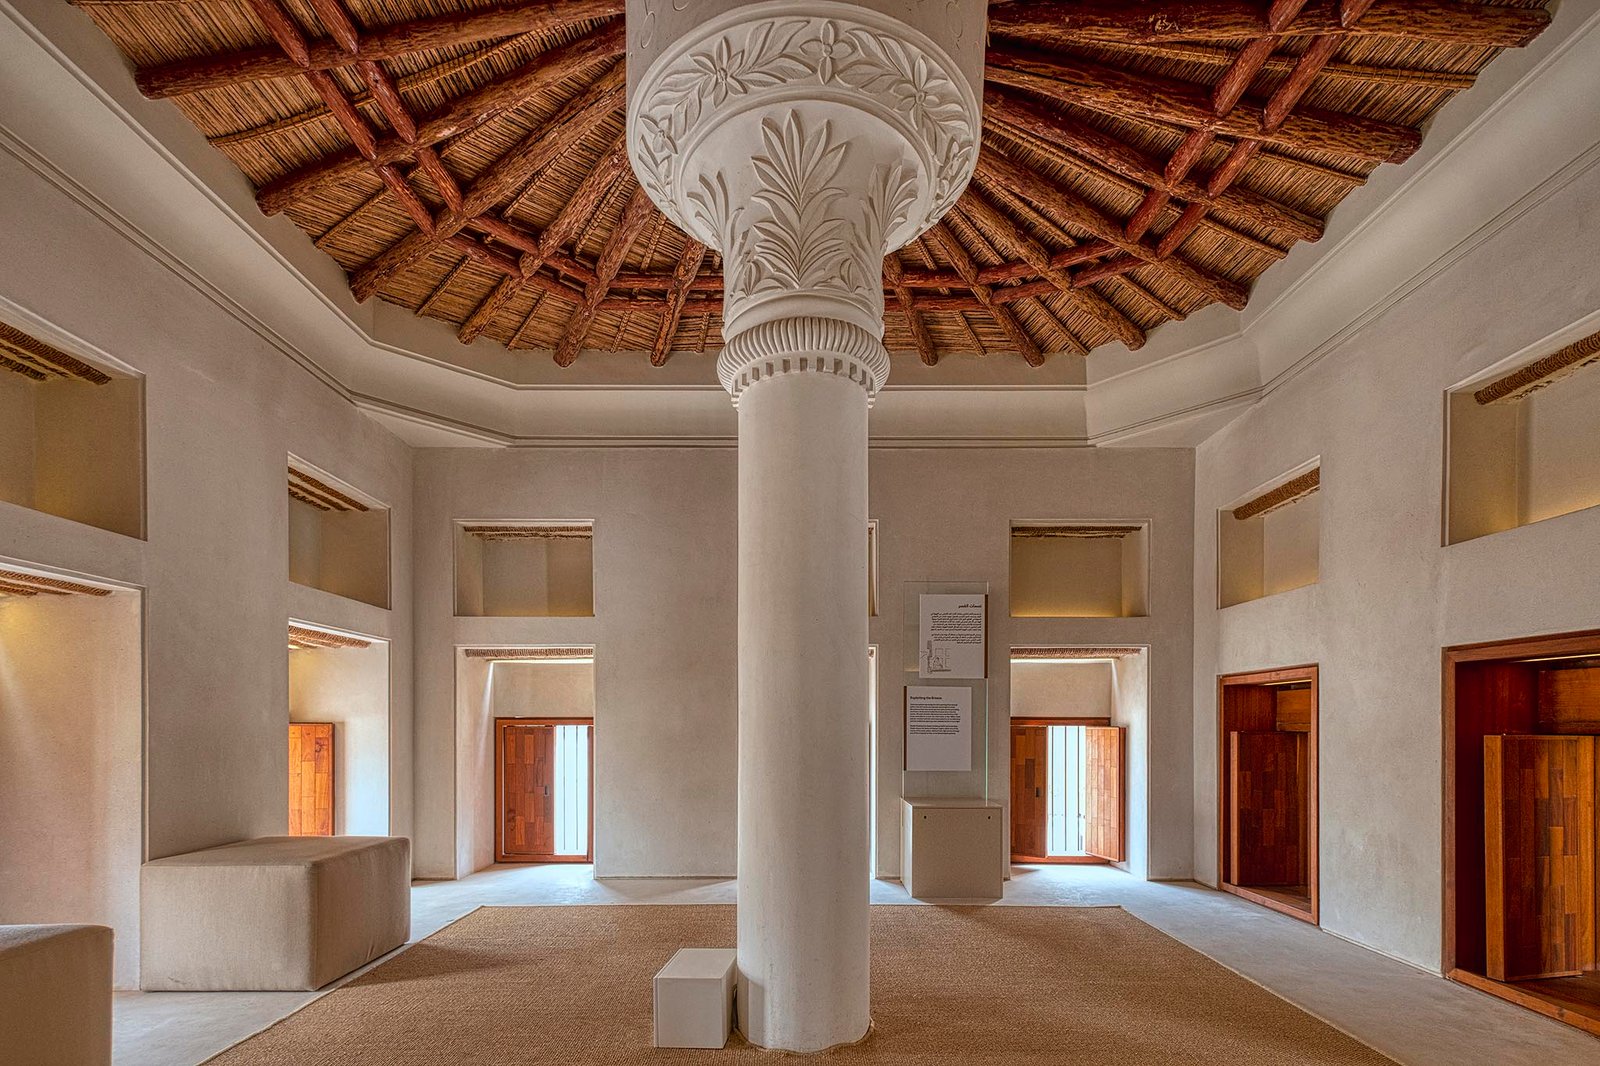 Explore a construção mais antiga de Abu Dhabi.